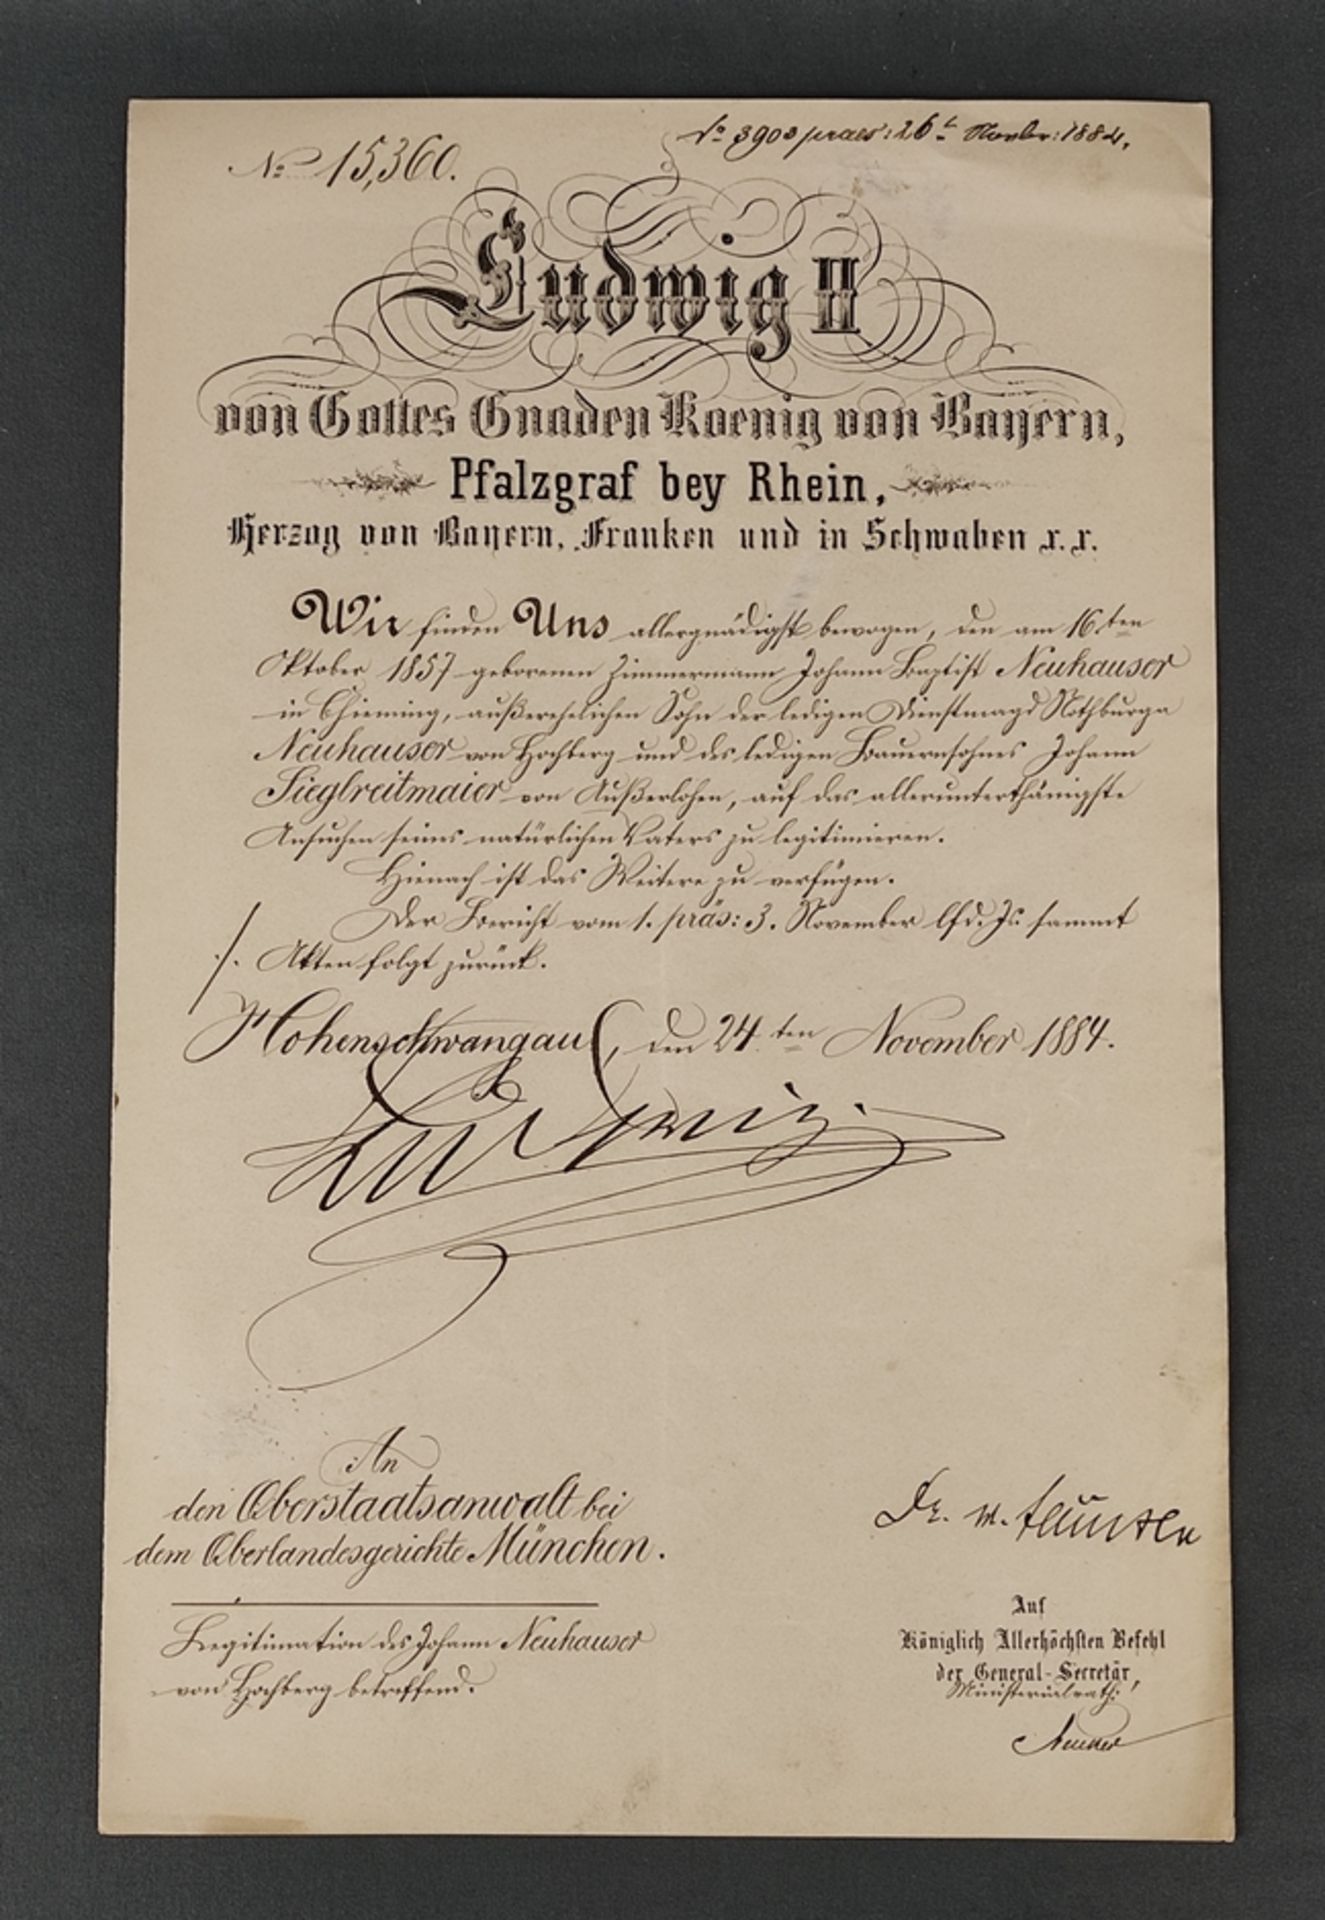 King Ludwig II of Bavaria, legitimation document for the carpenter Johann Baptist Neuhauser, dated 